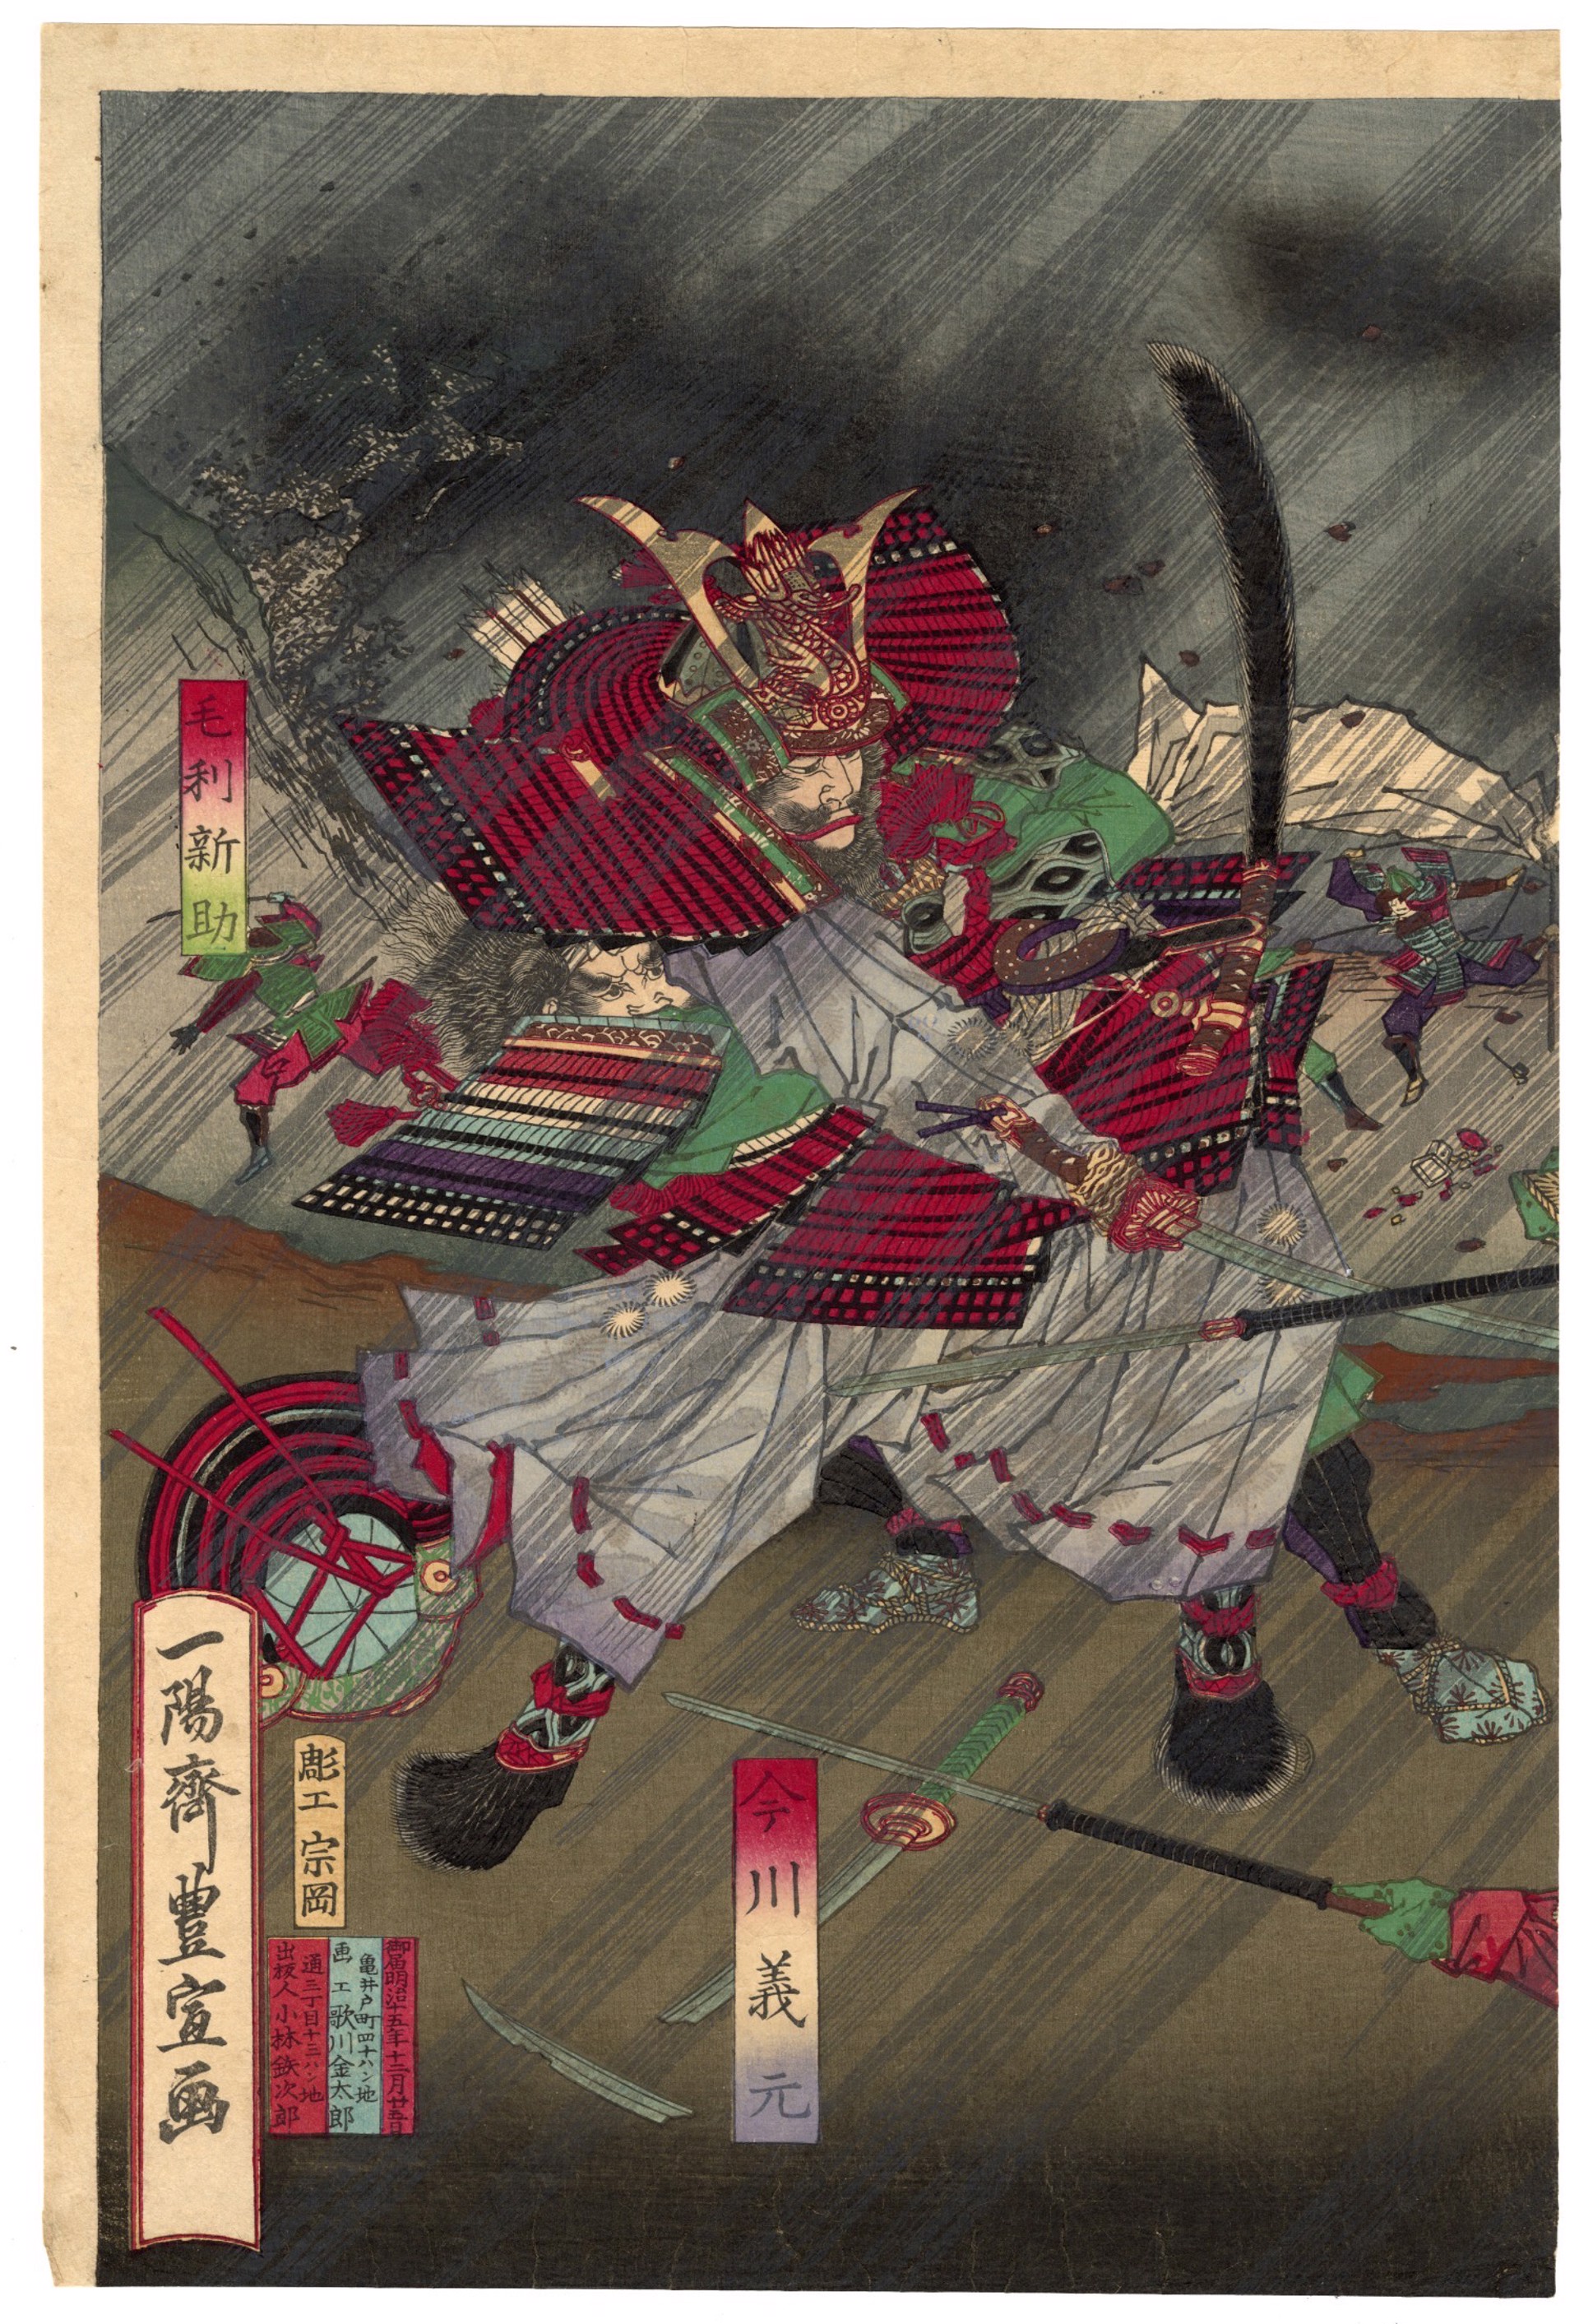 Battle of Okehazama in Bishu by Toyonobu